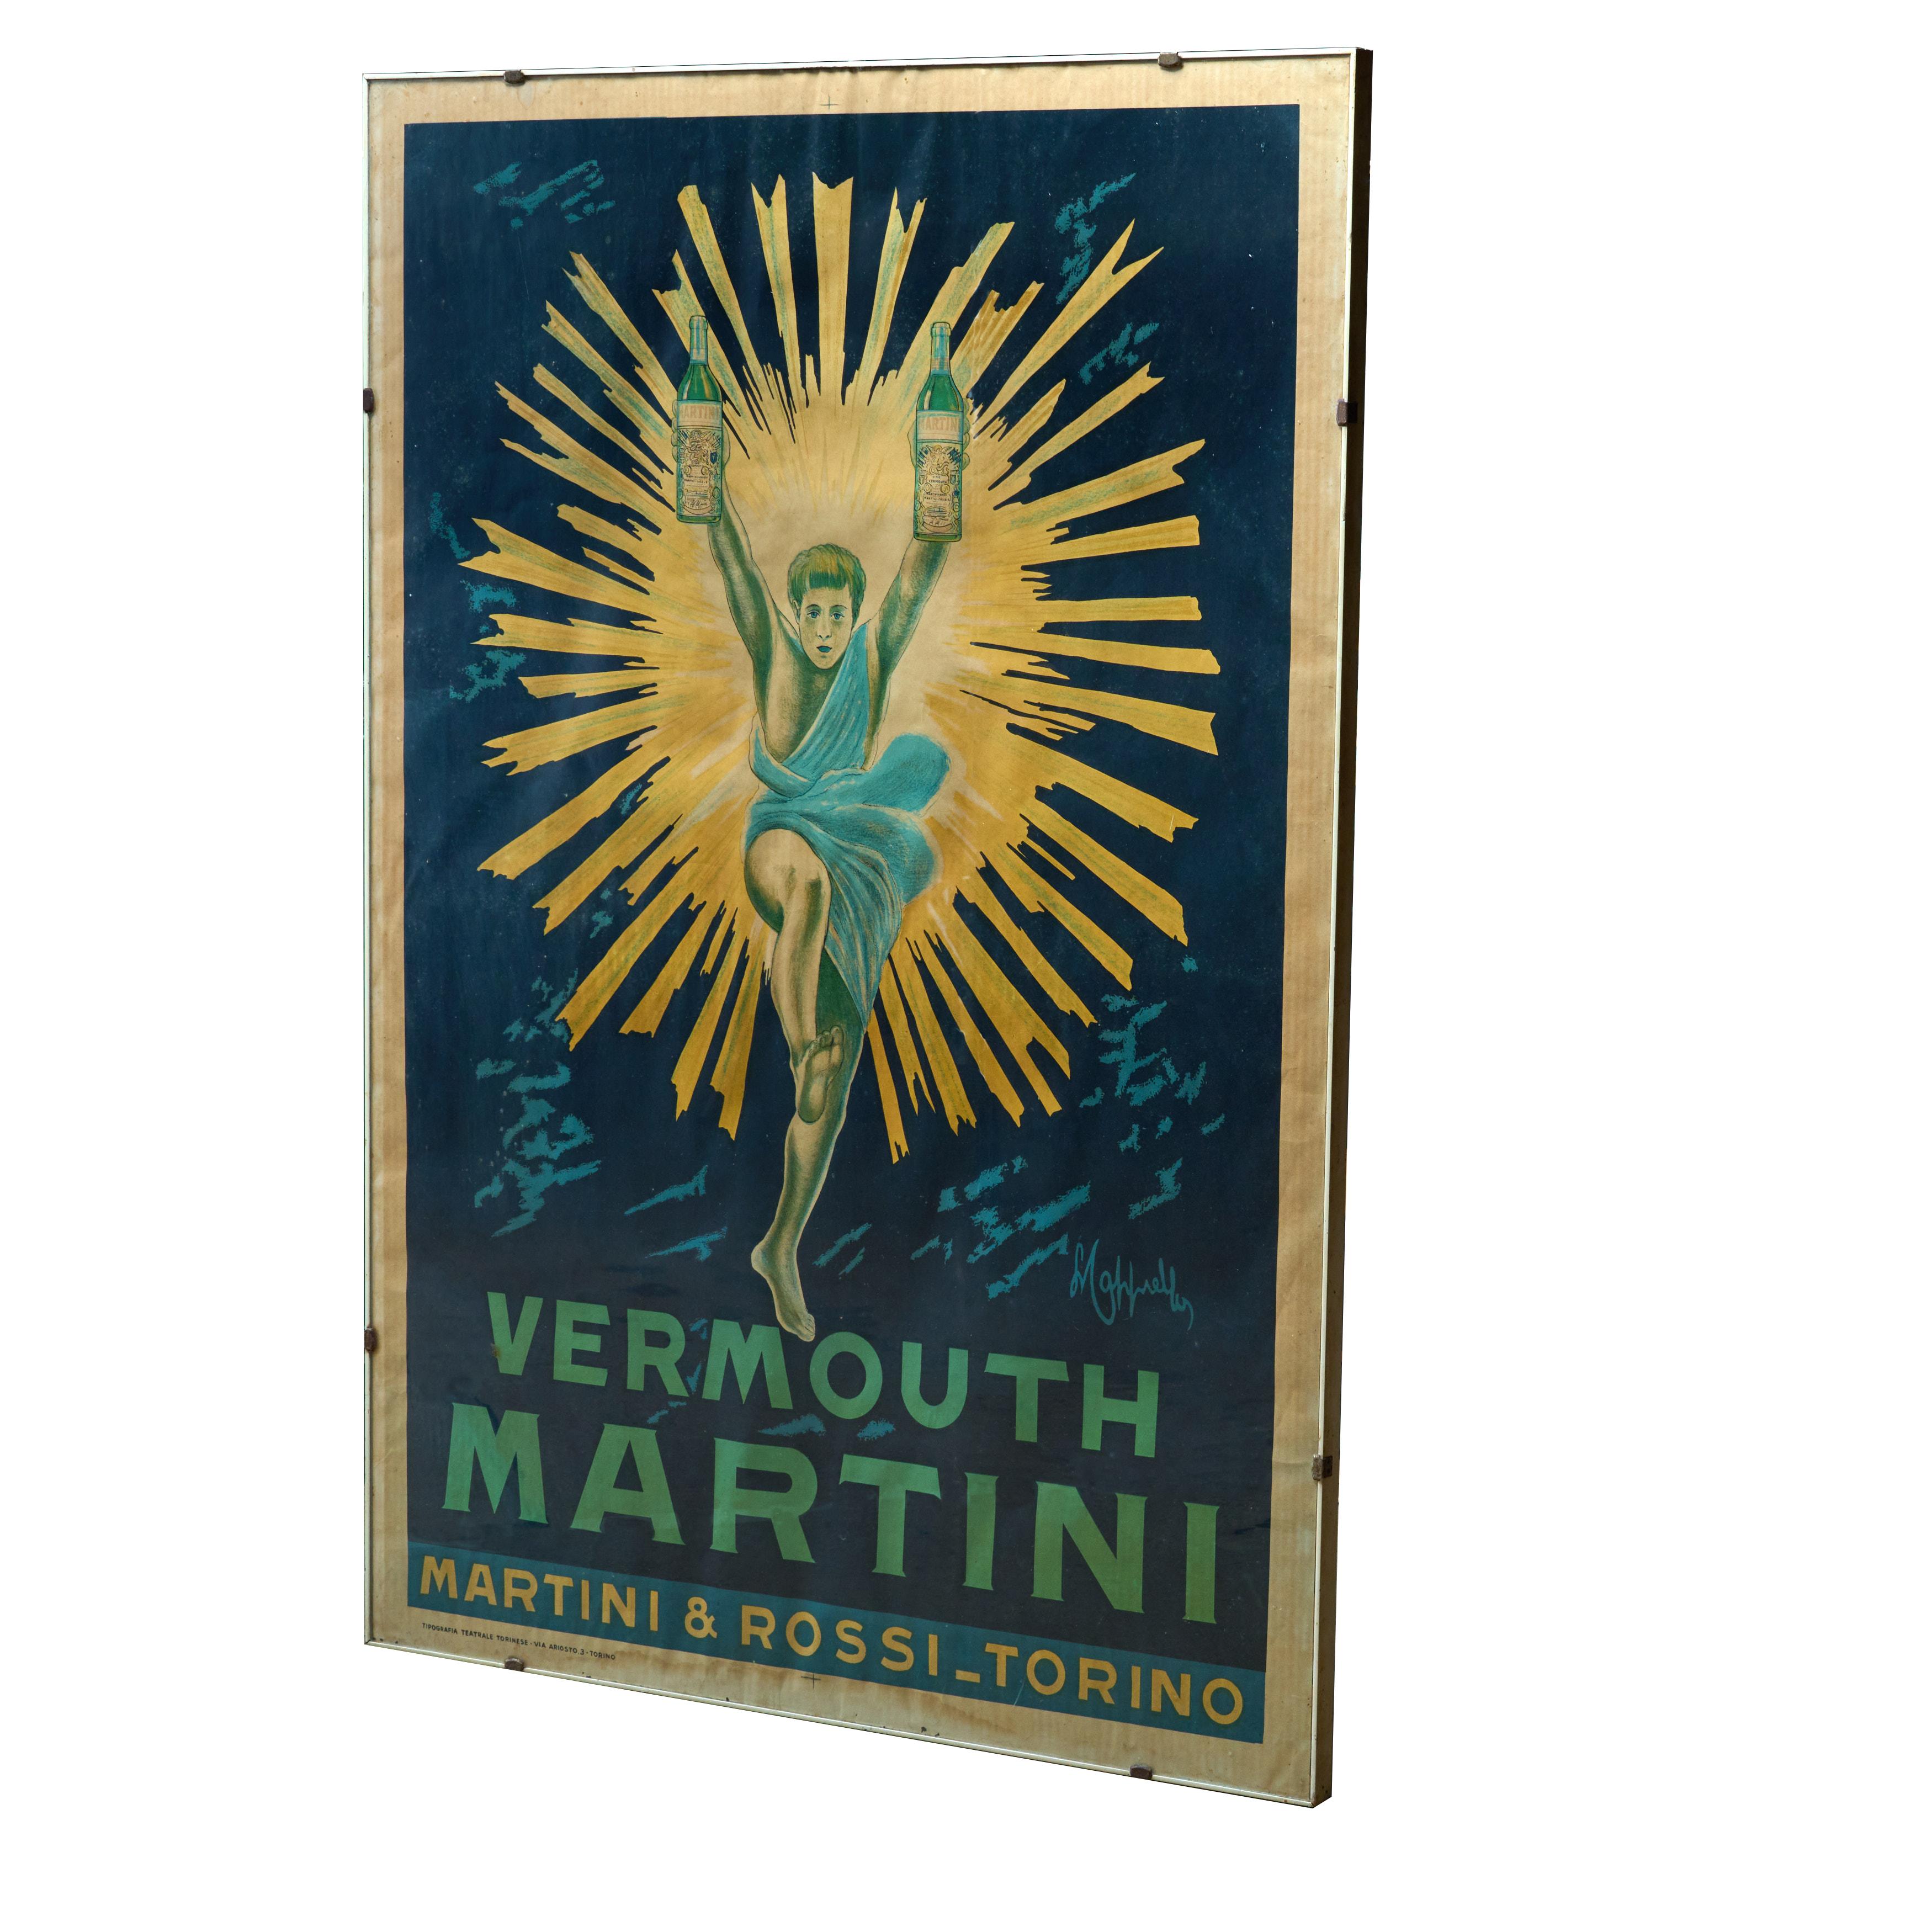 Affiche publicitaire originale encadrée pour le vermouth Martini et Rossi. Signé par l'artiste. Des graphismes et des couleurs magnifiques. Excellent état. 

